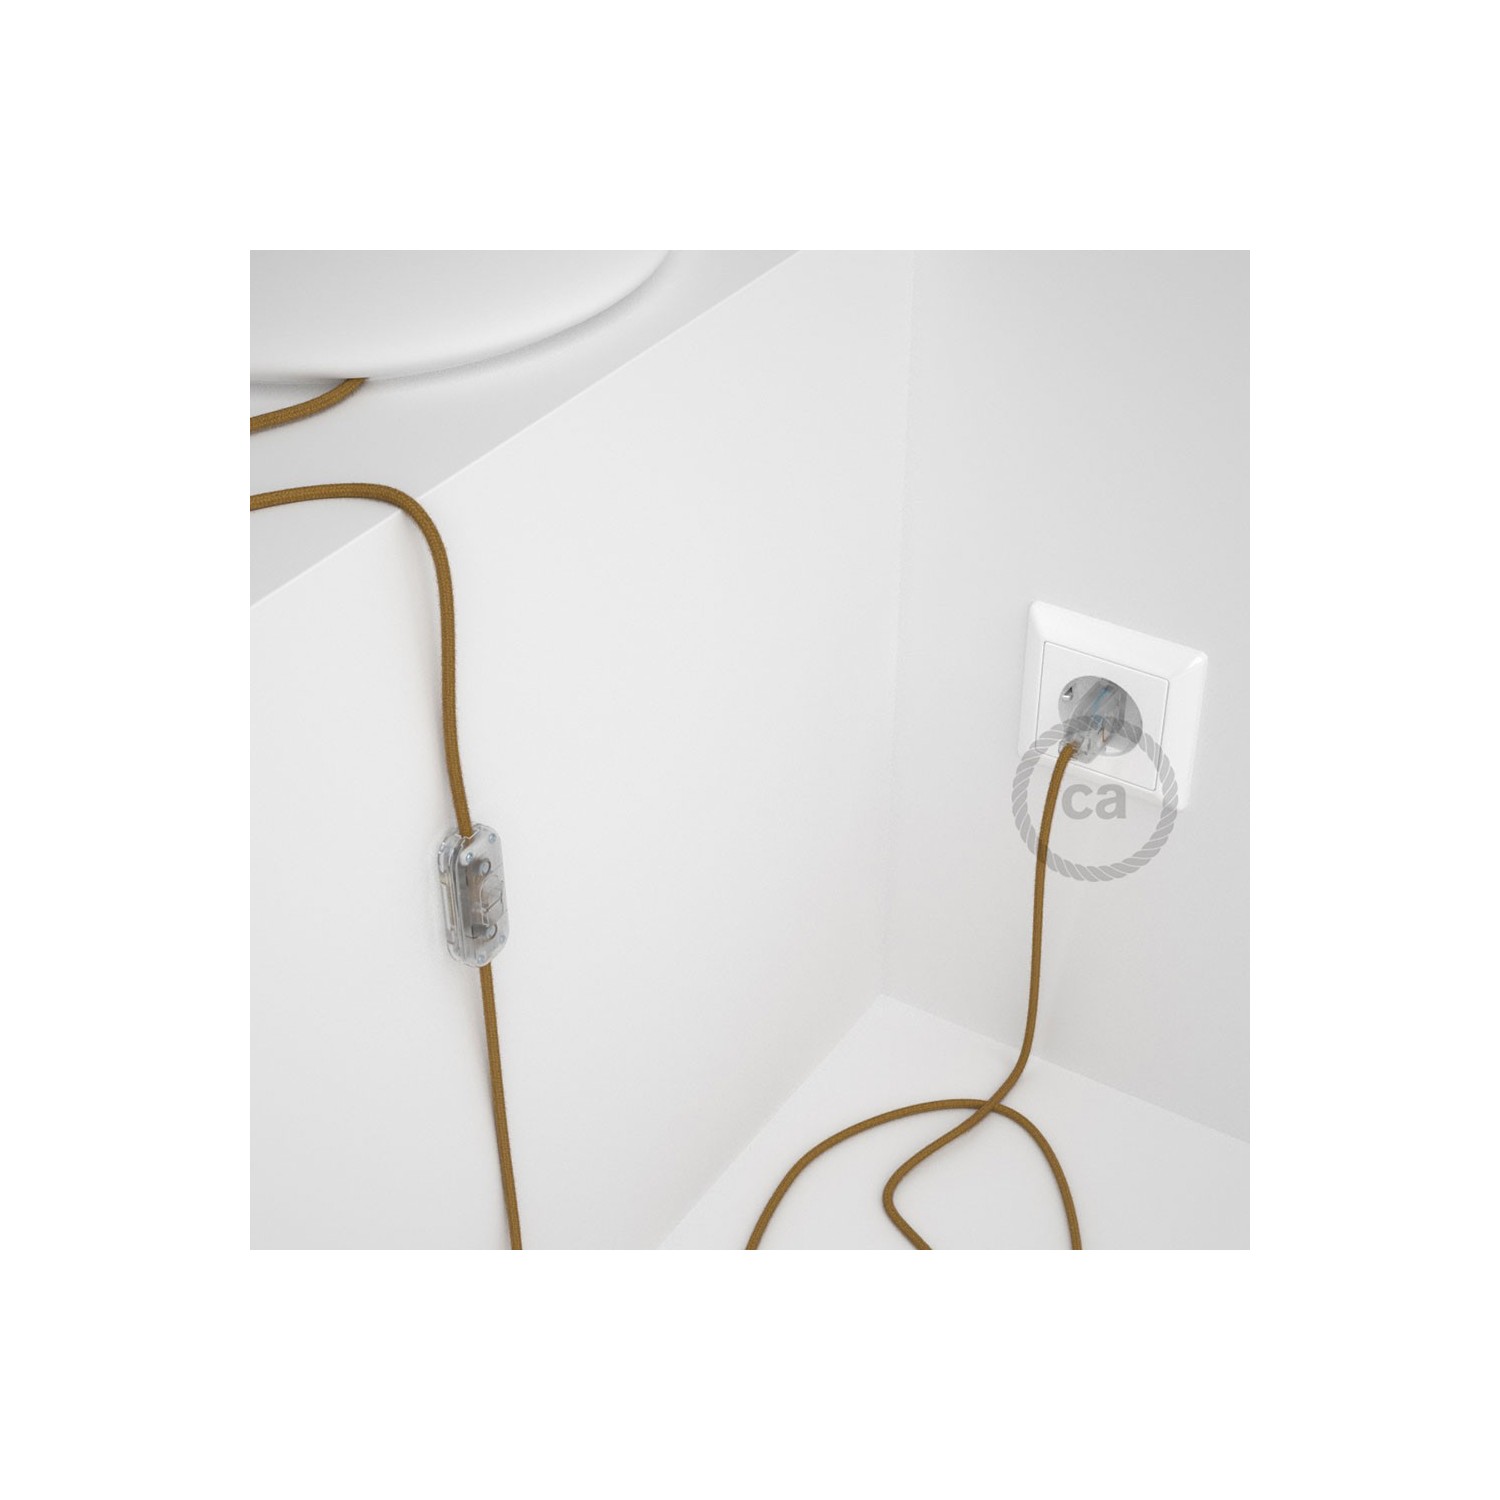 Cordon pour lampe, câble RC31 Coton Miel Doré 1,80 m. Choisissez la couleur de la fiche et de l'interrupteur!